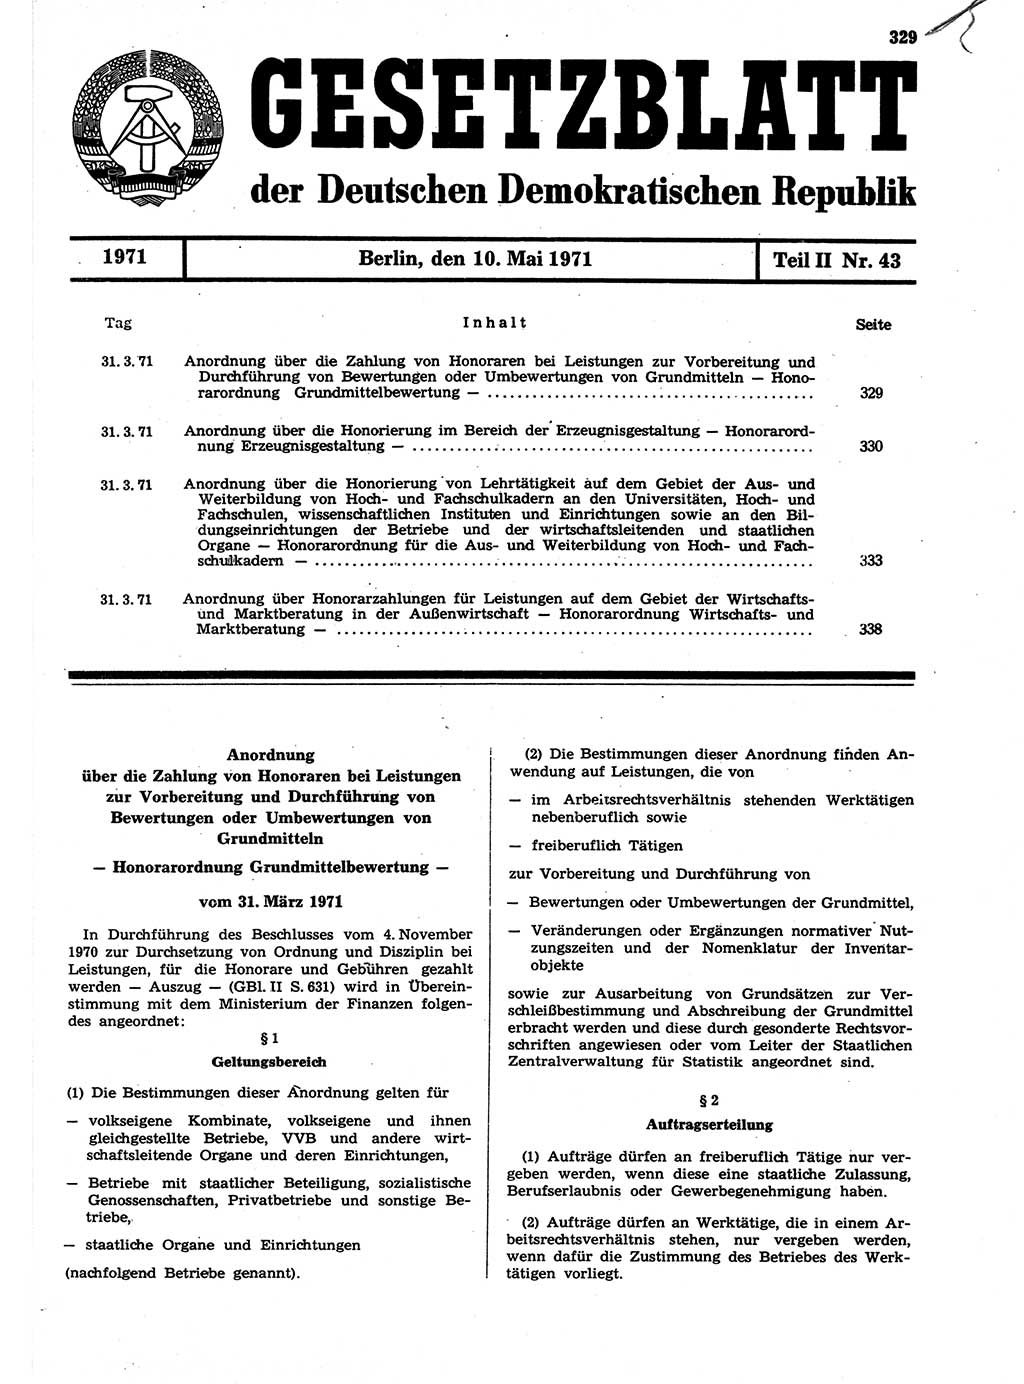 Gesetzblatt (GBl.) der Deutschen Demokratischen Republik (DDR) Teil ⅠⅠ 1971, Seite 329 (GBl. DDR ⅠⅠ 1971, S. 329)